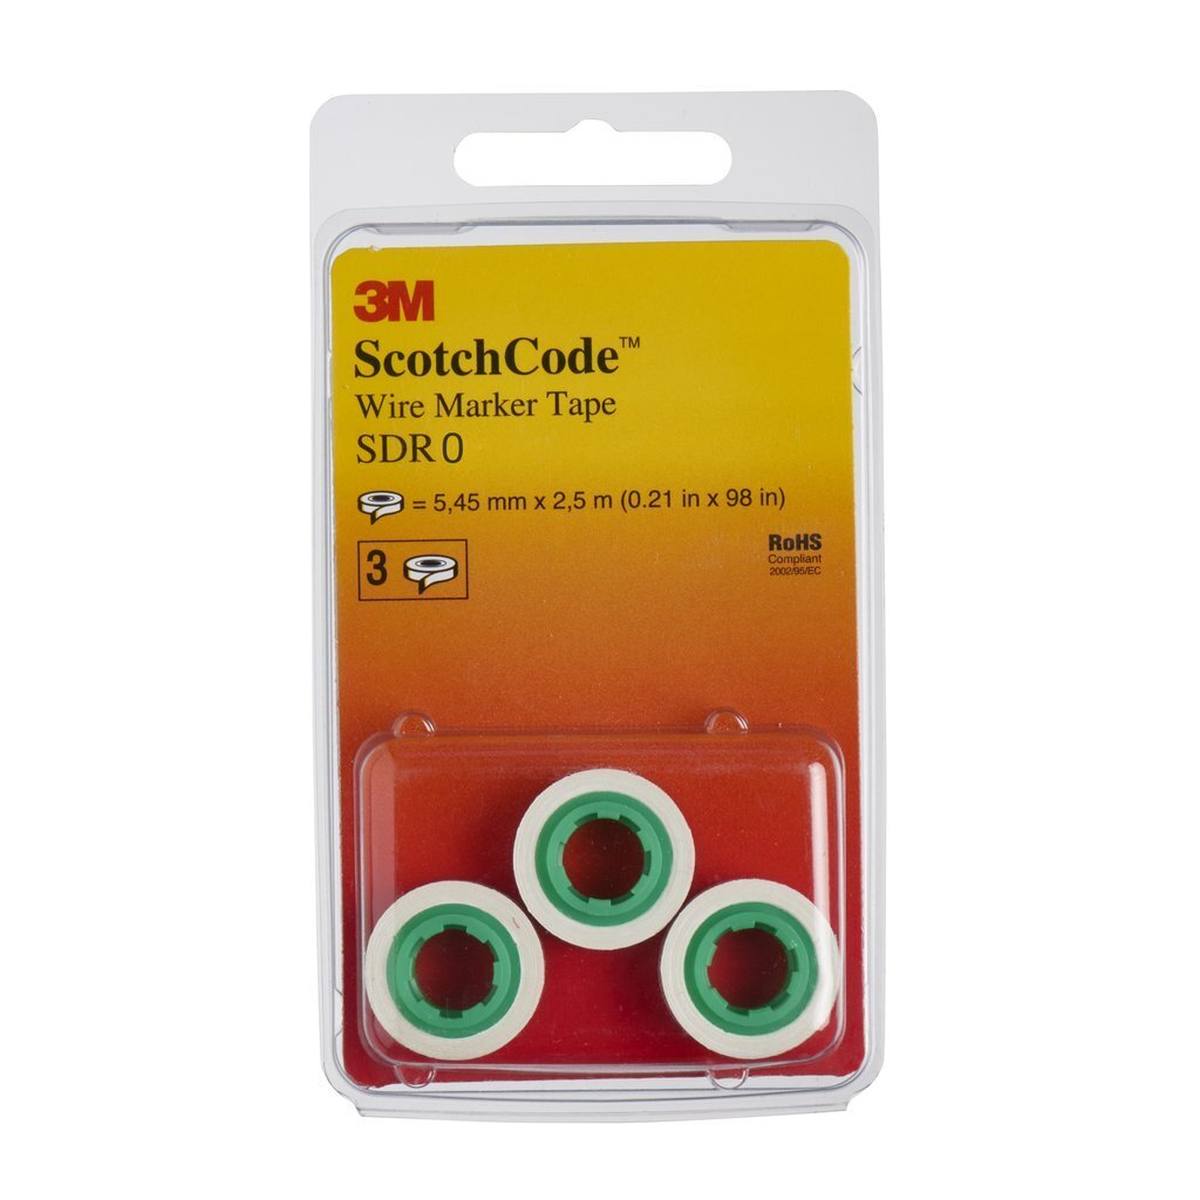 3M ScotchCode SDR-0 rollos de recambio de marcador de cables, número 0, paquete de 3